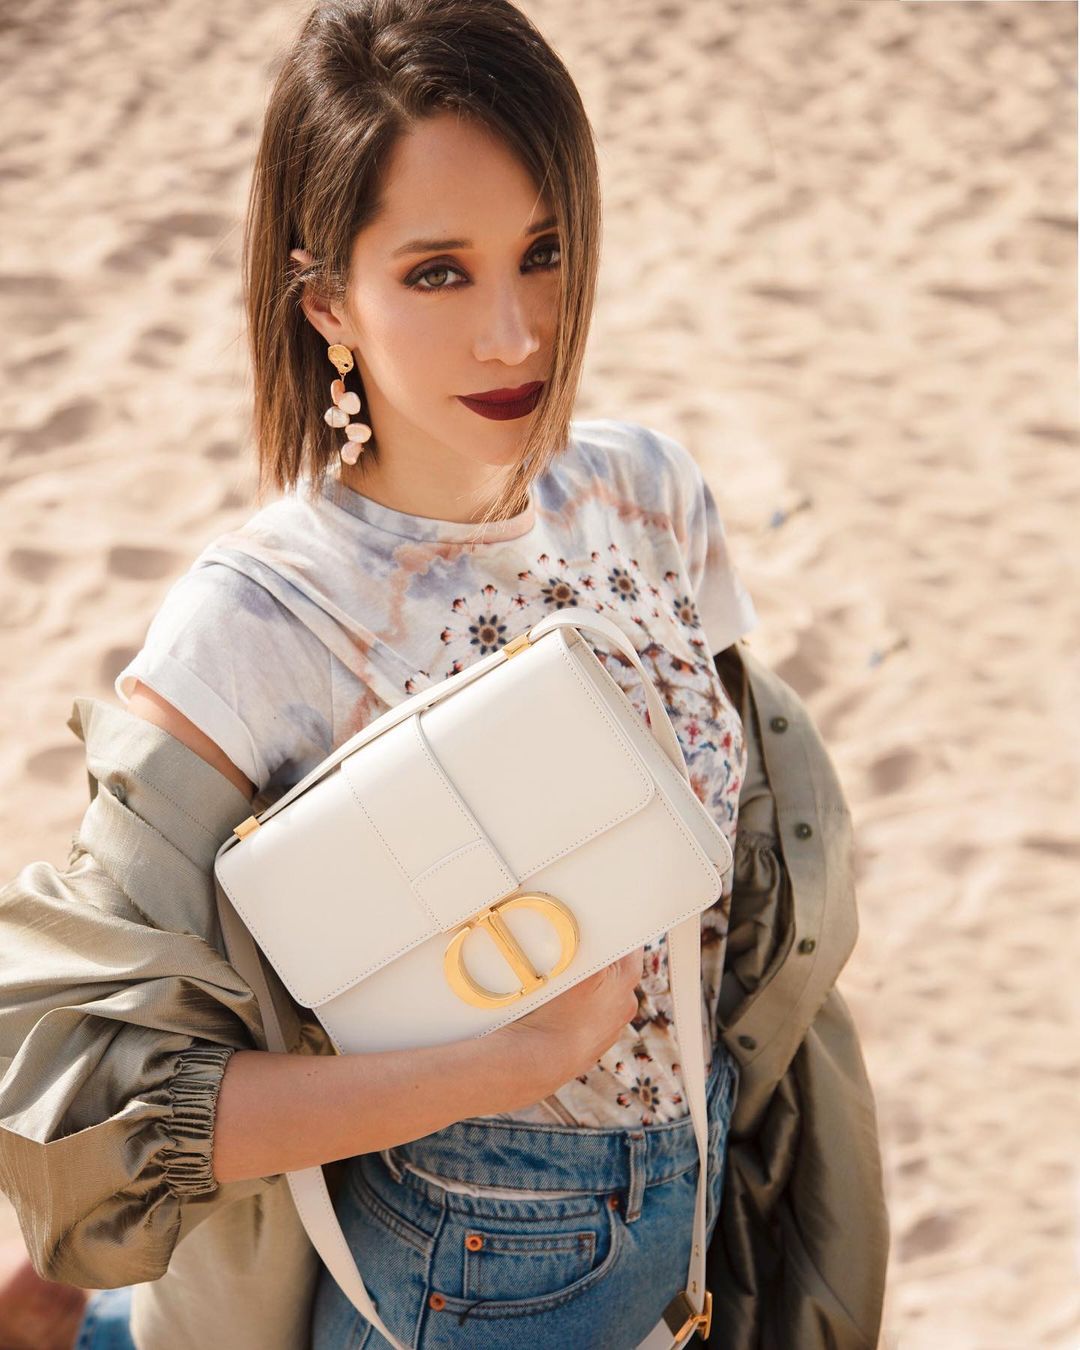 الصورة من حسابها على انستغرام Dior صورة ٣ لانا الساحلي بحقيبة كتف من دار 